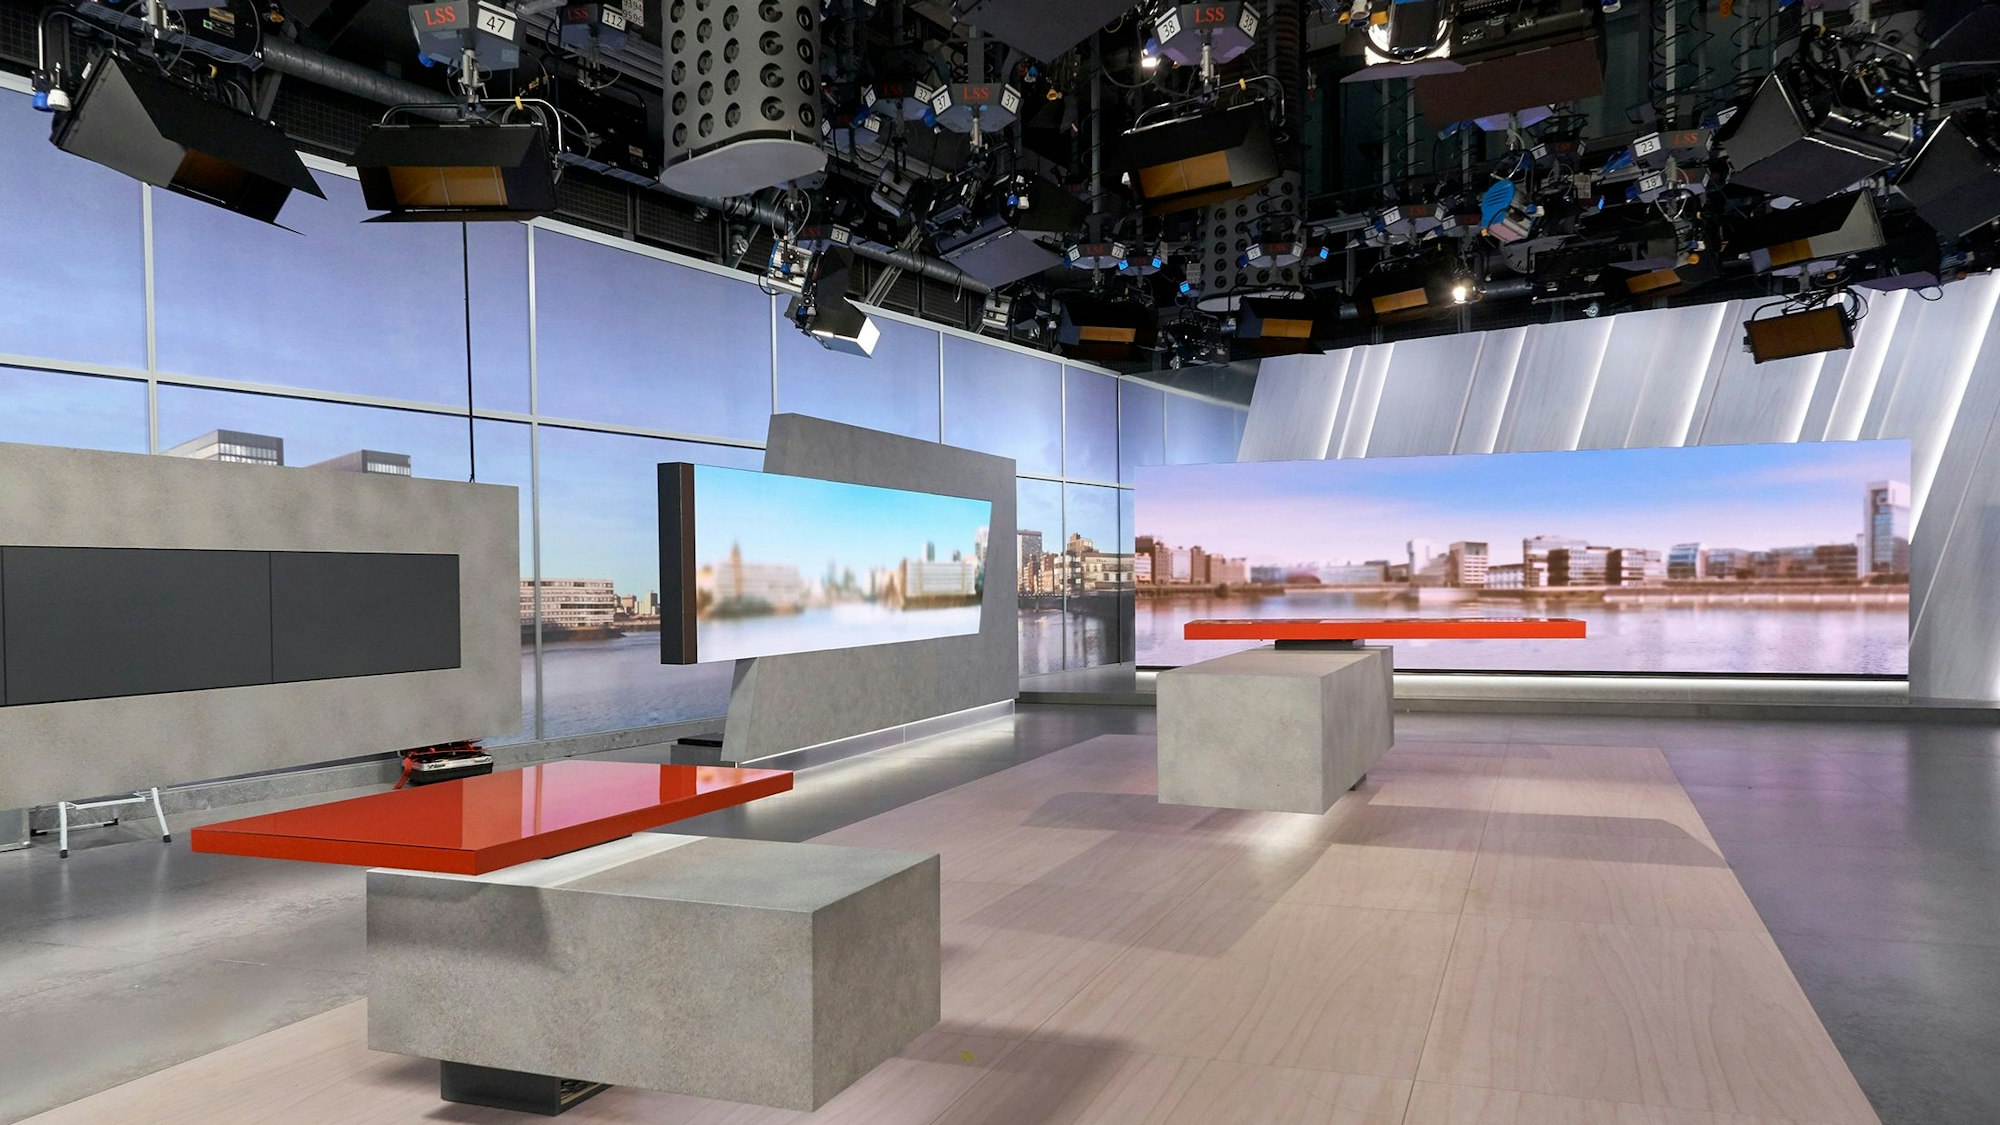 Das WDR-Nachrichtenstudio in Köln ohne Moderatoren und Kameras.